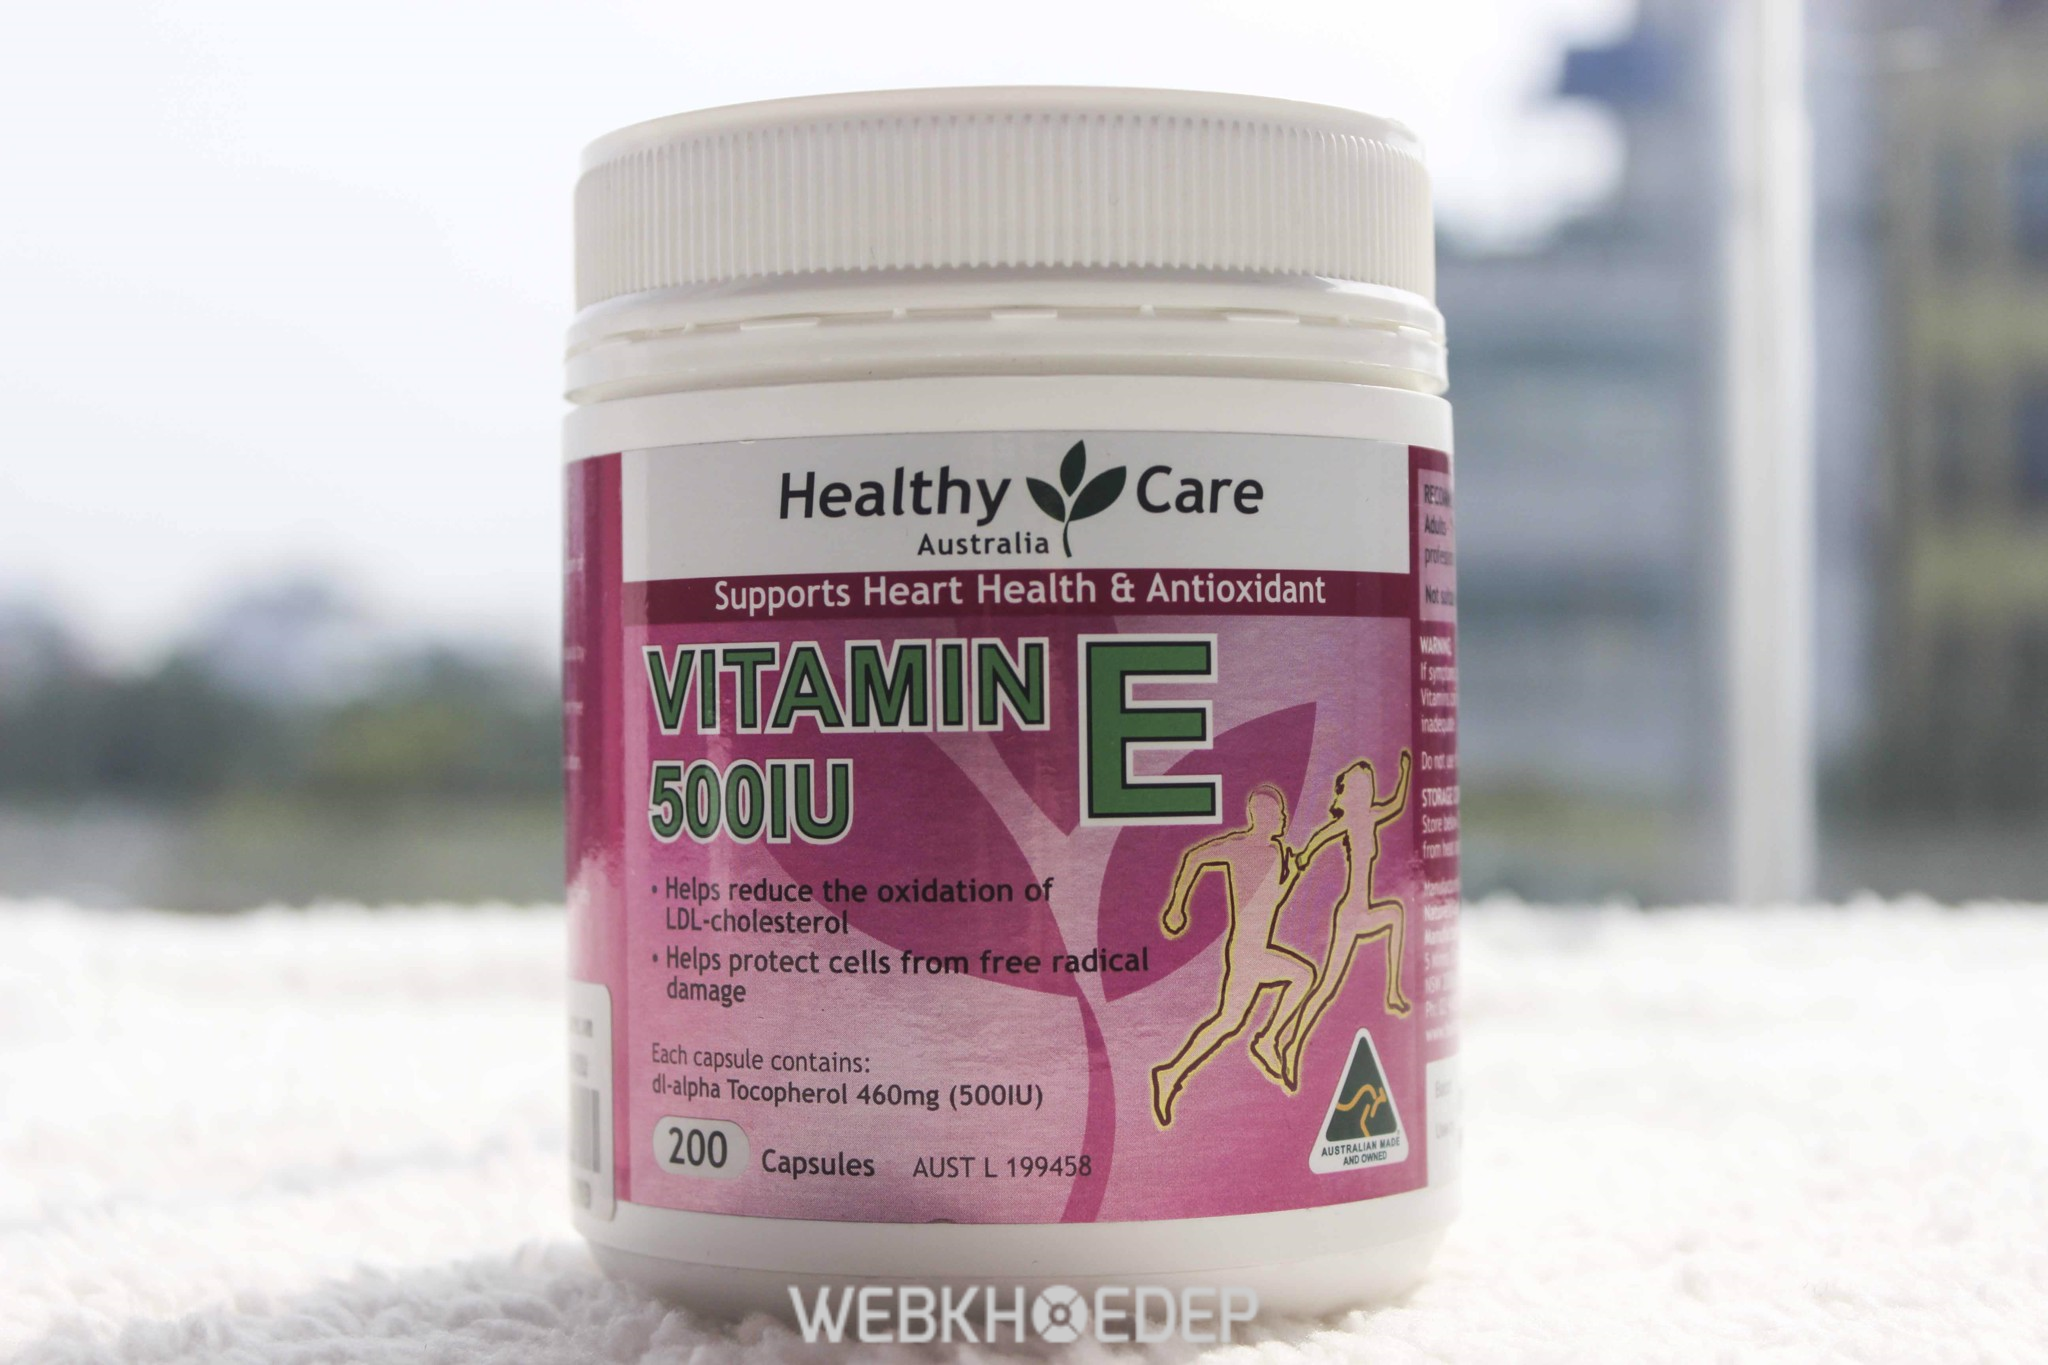 Healthy Care Vitamin E 500IU 